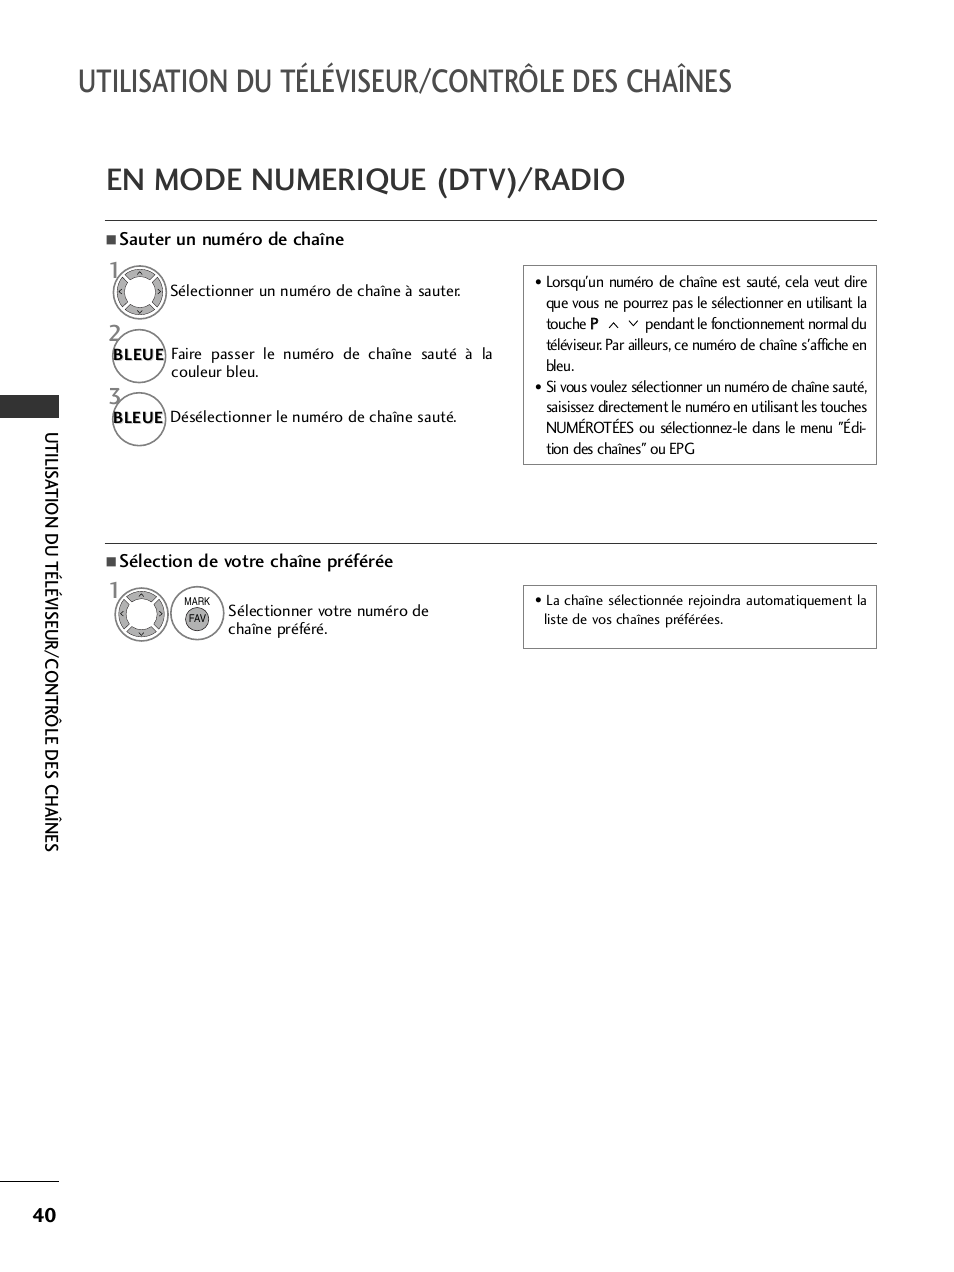 Utilisation du téléviseur/contrôle des chaînes, En mode numerique (dtv)/radio | LG 50PQ6000 Manuel d'utilisation | Page 42 / 124